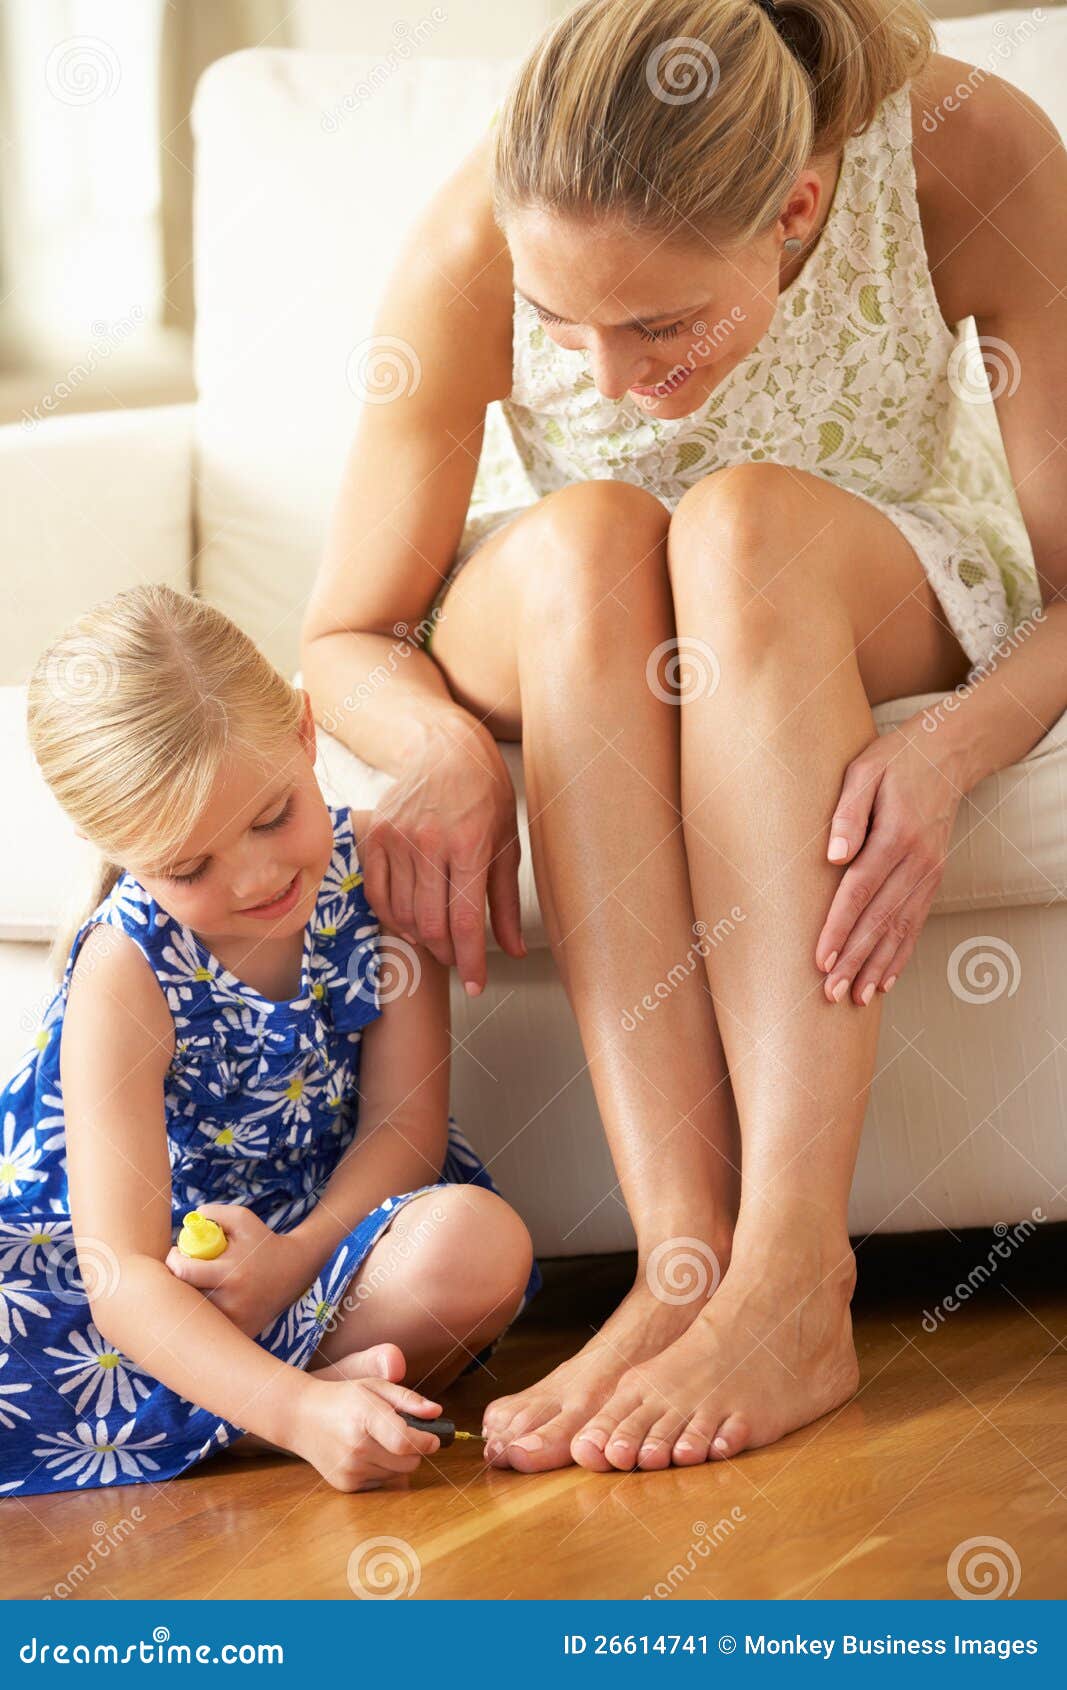 Отец лижет киску дочери. Детские ступни девочек облизывают. Девочка красит ногти на ногах маме. Мать и дочь ступни. Стопы детей девочек.